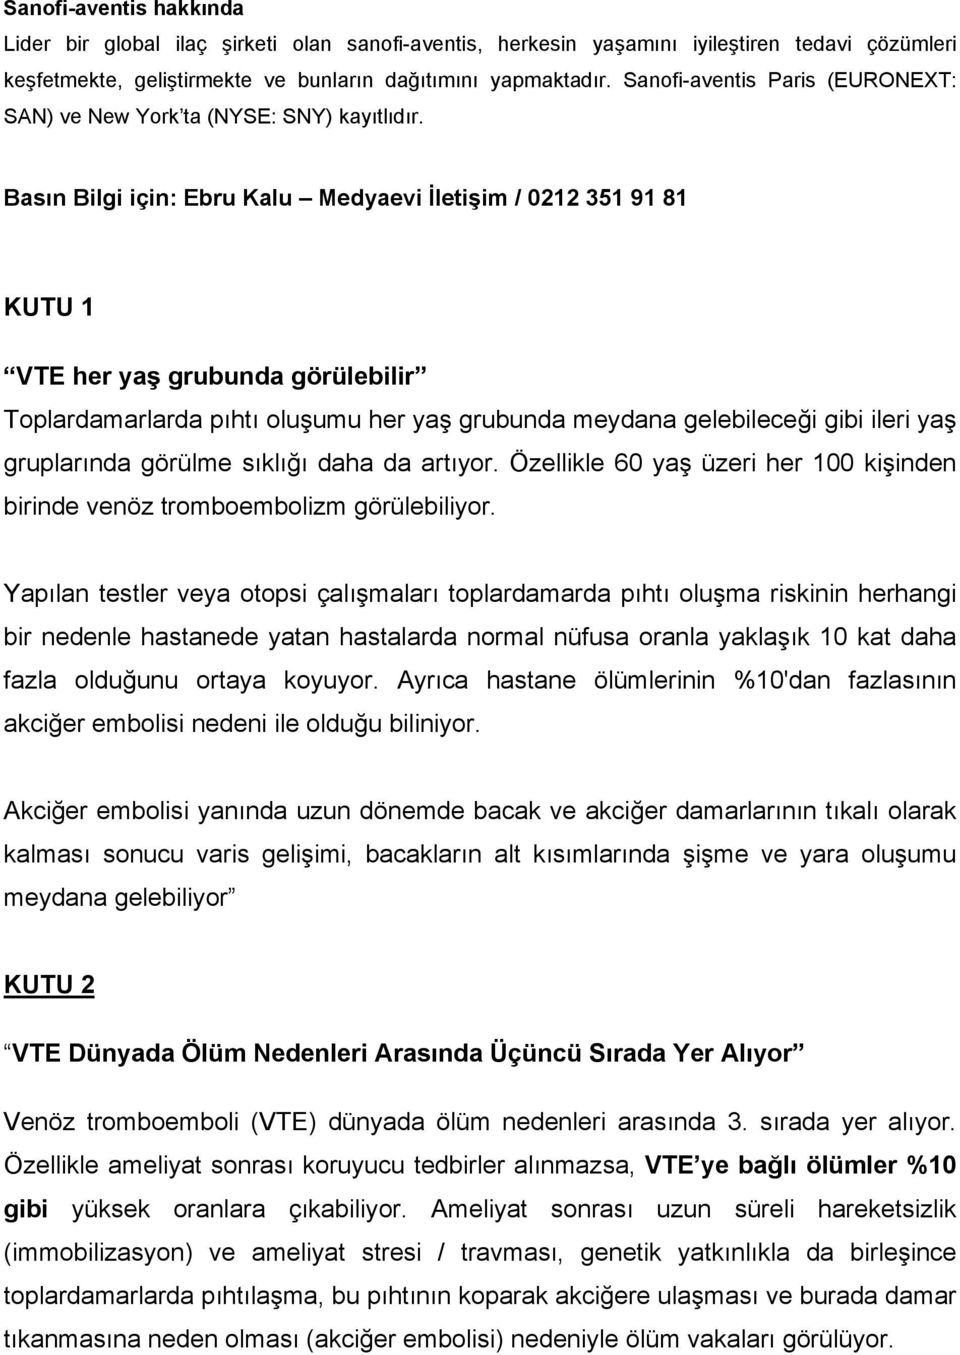 Basın Bilgi için: Ebru Kalu Medyaevi İletişim / 0212 351 91 81 KUTU 1 VTE her yaş grubunda görülebilir Toplardamarlarda pıhtı oluşumu her yaş grubunda meydana gelebileceği gibi ileri yaş gruplarında